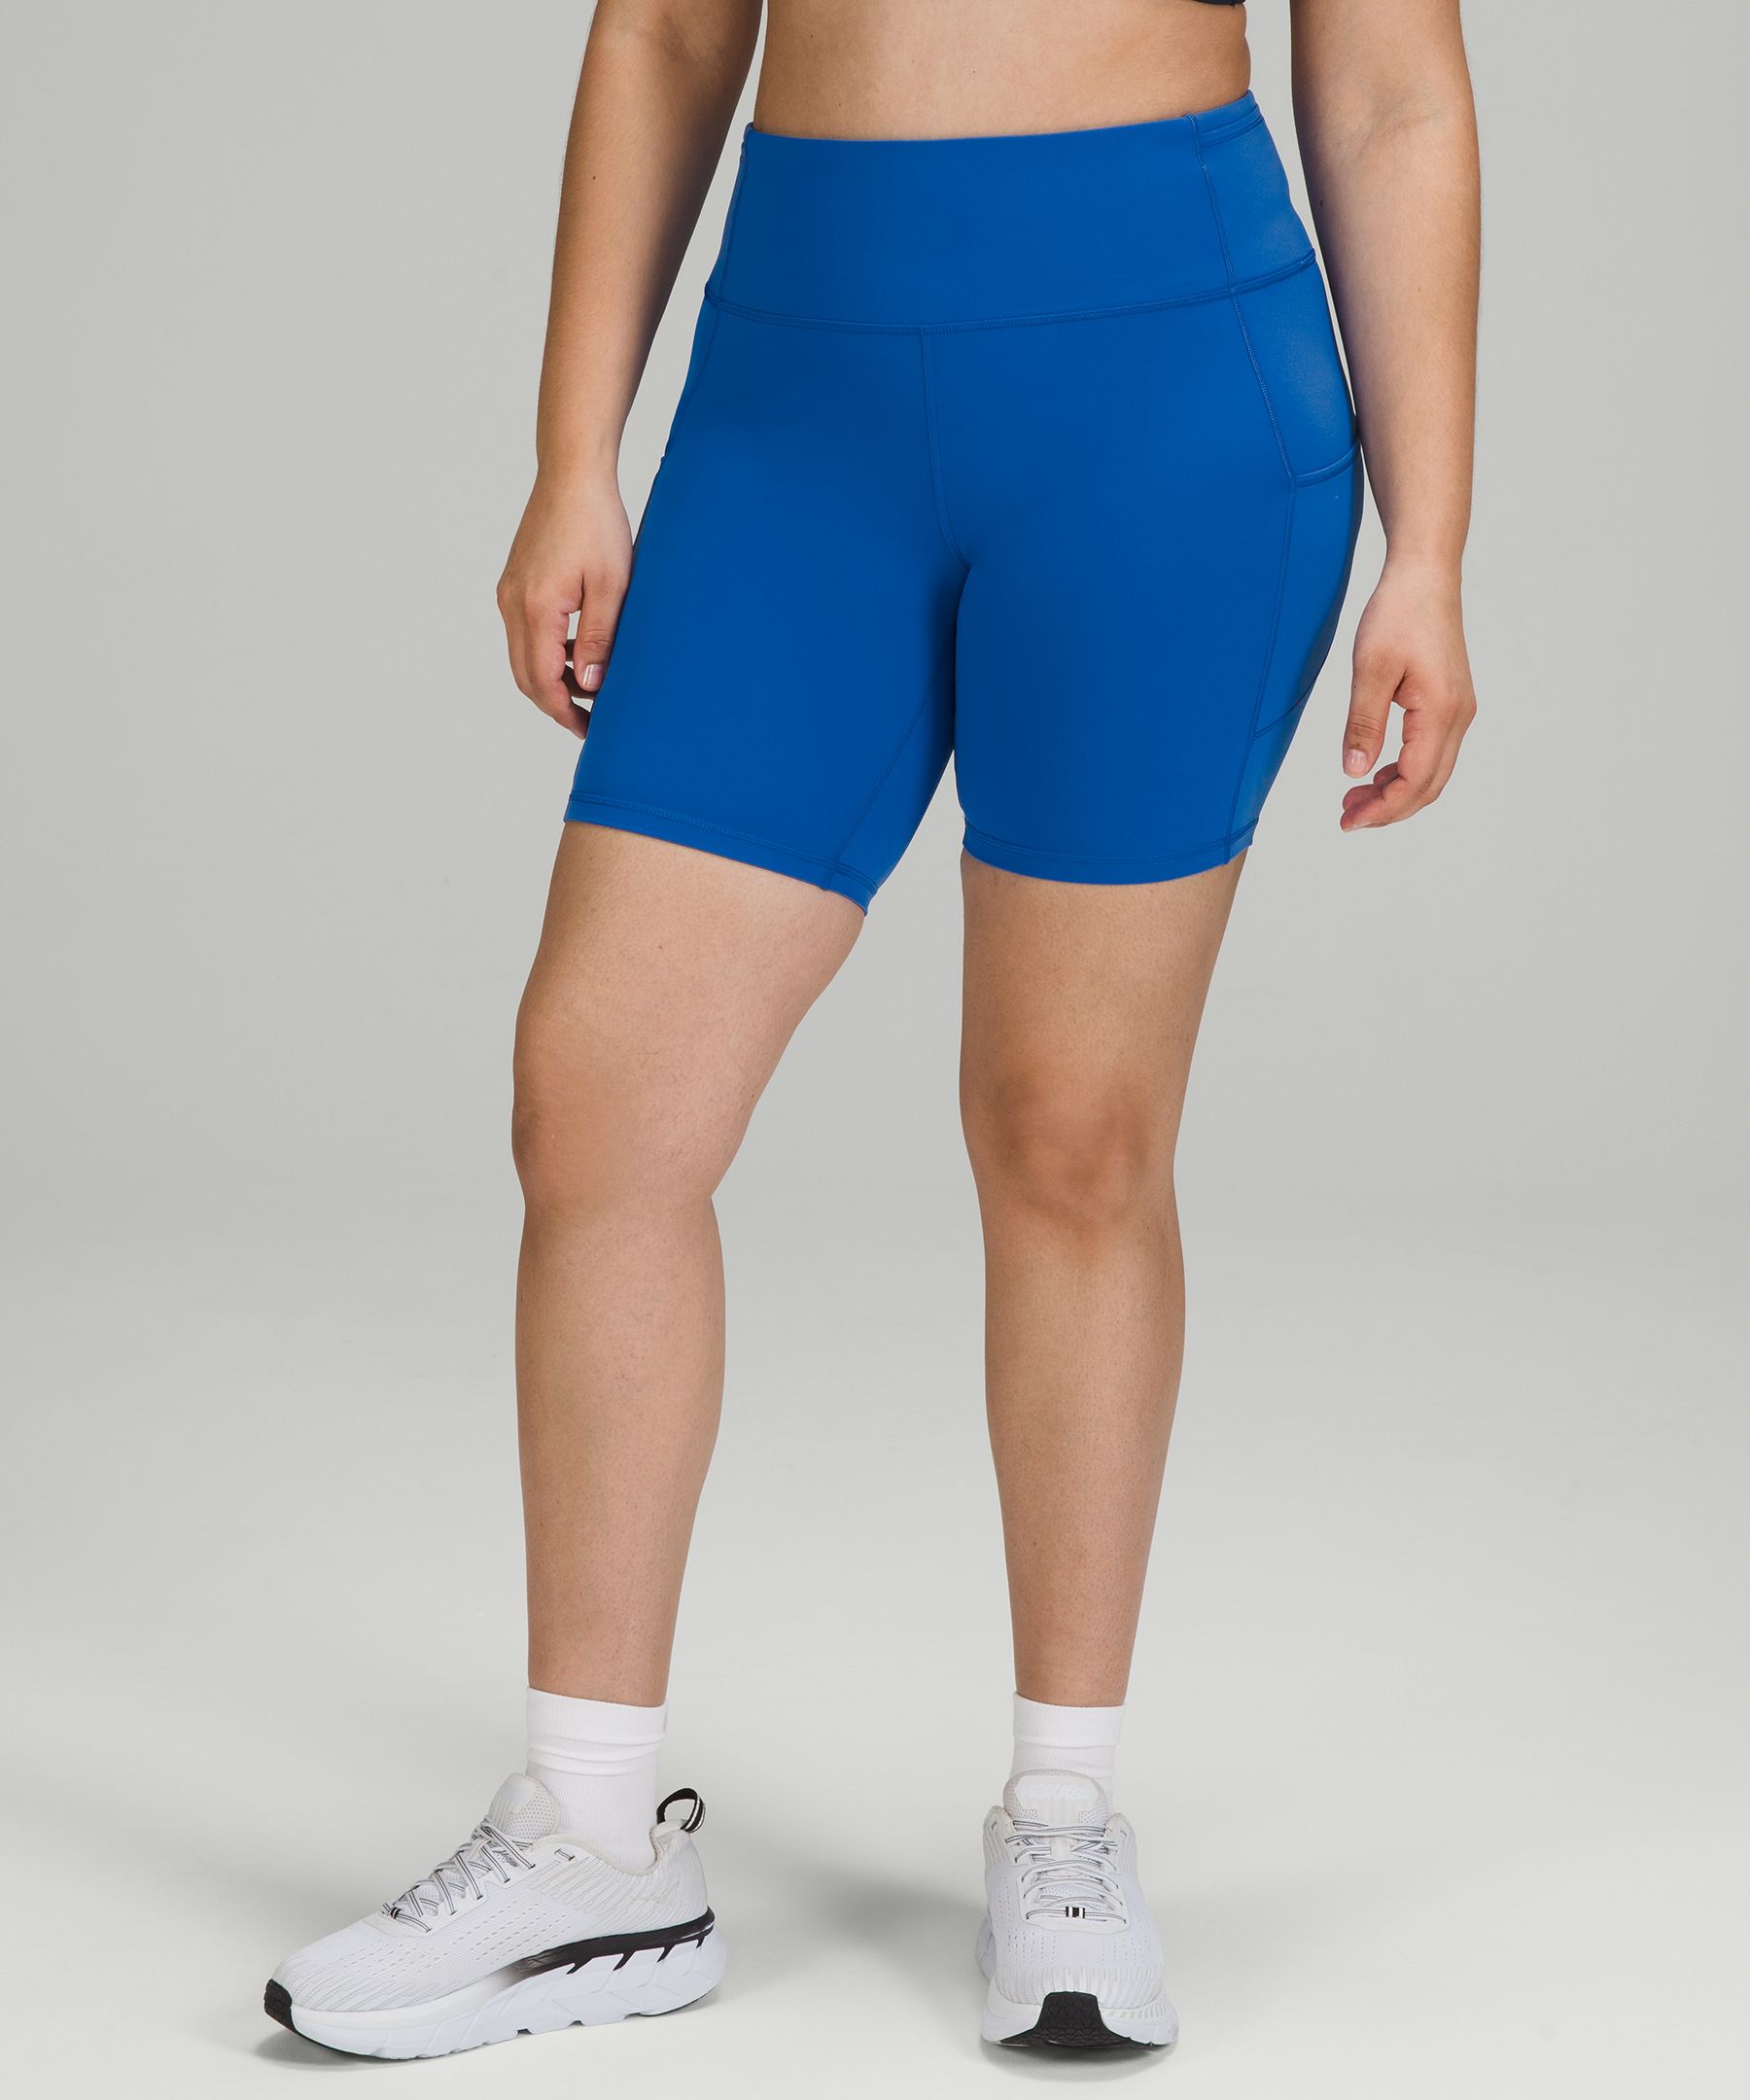 lululemon - Fast And Free 6 Inch Shorts Size 8 on Designer Wardrobe